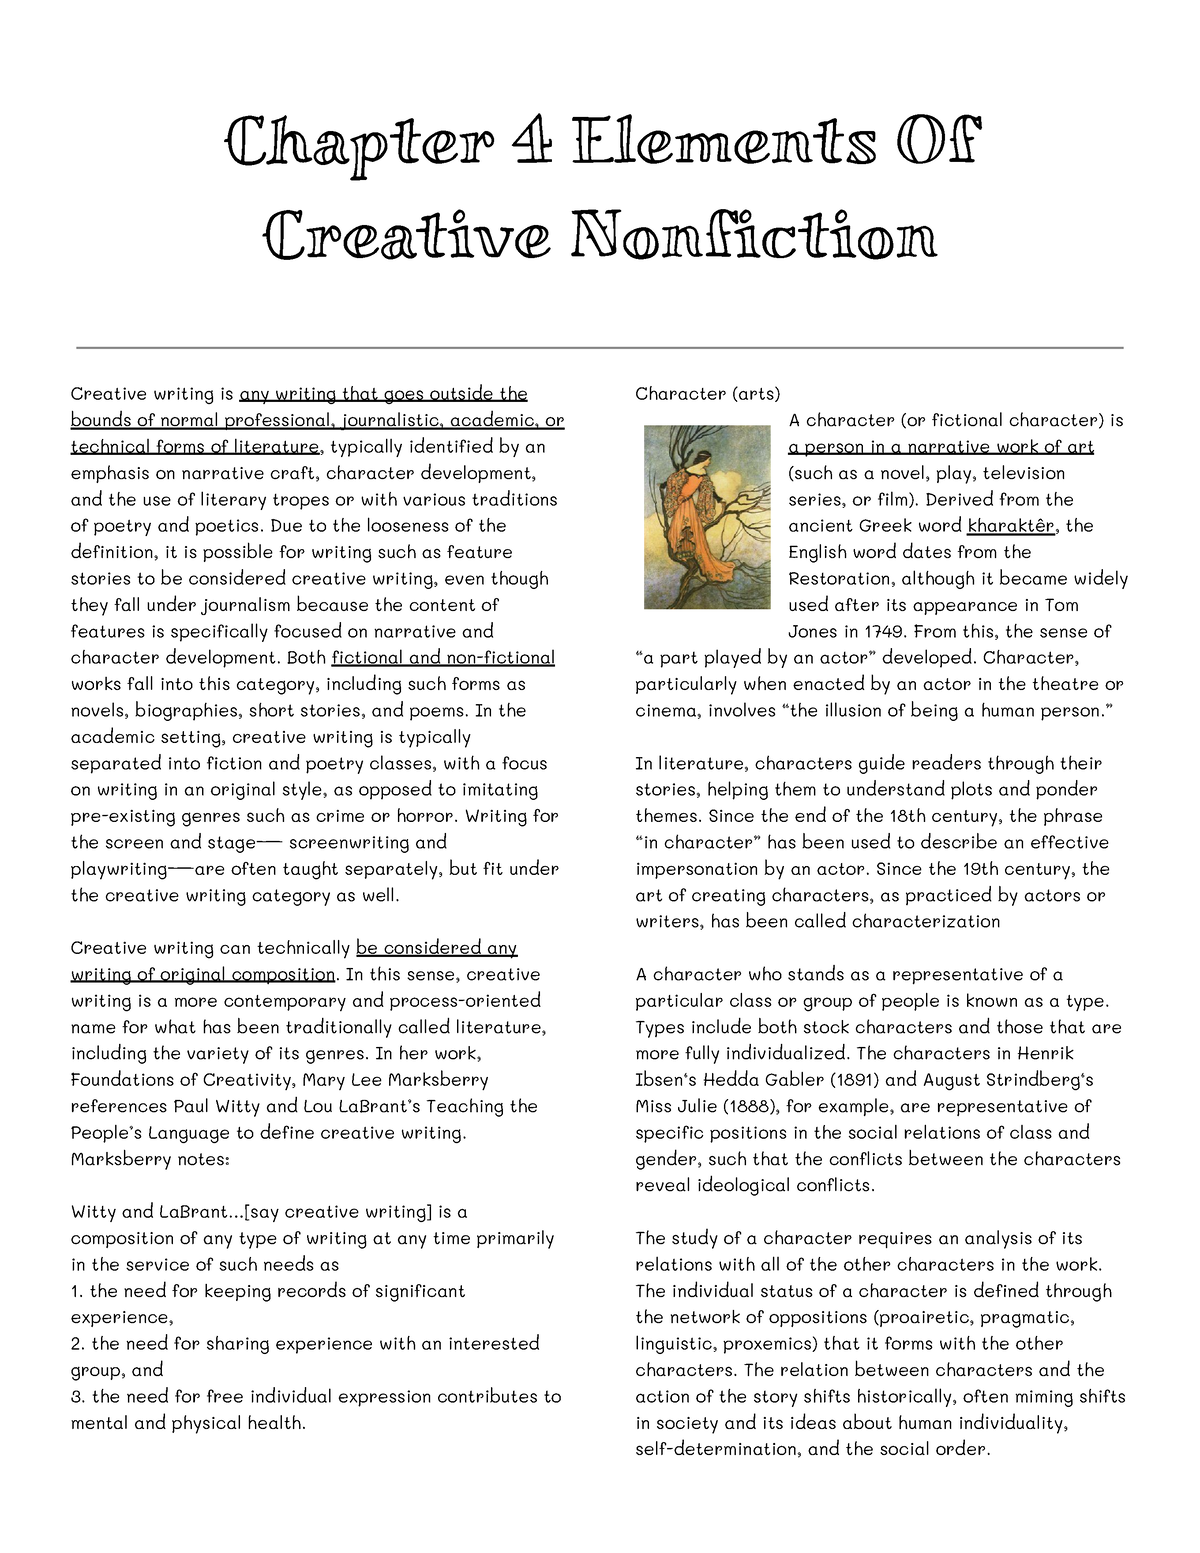 creative nonfiction short essays